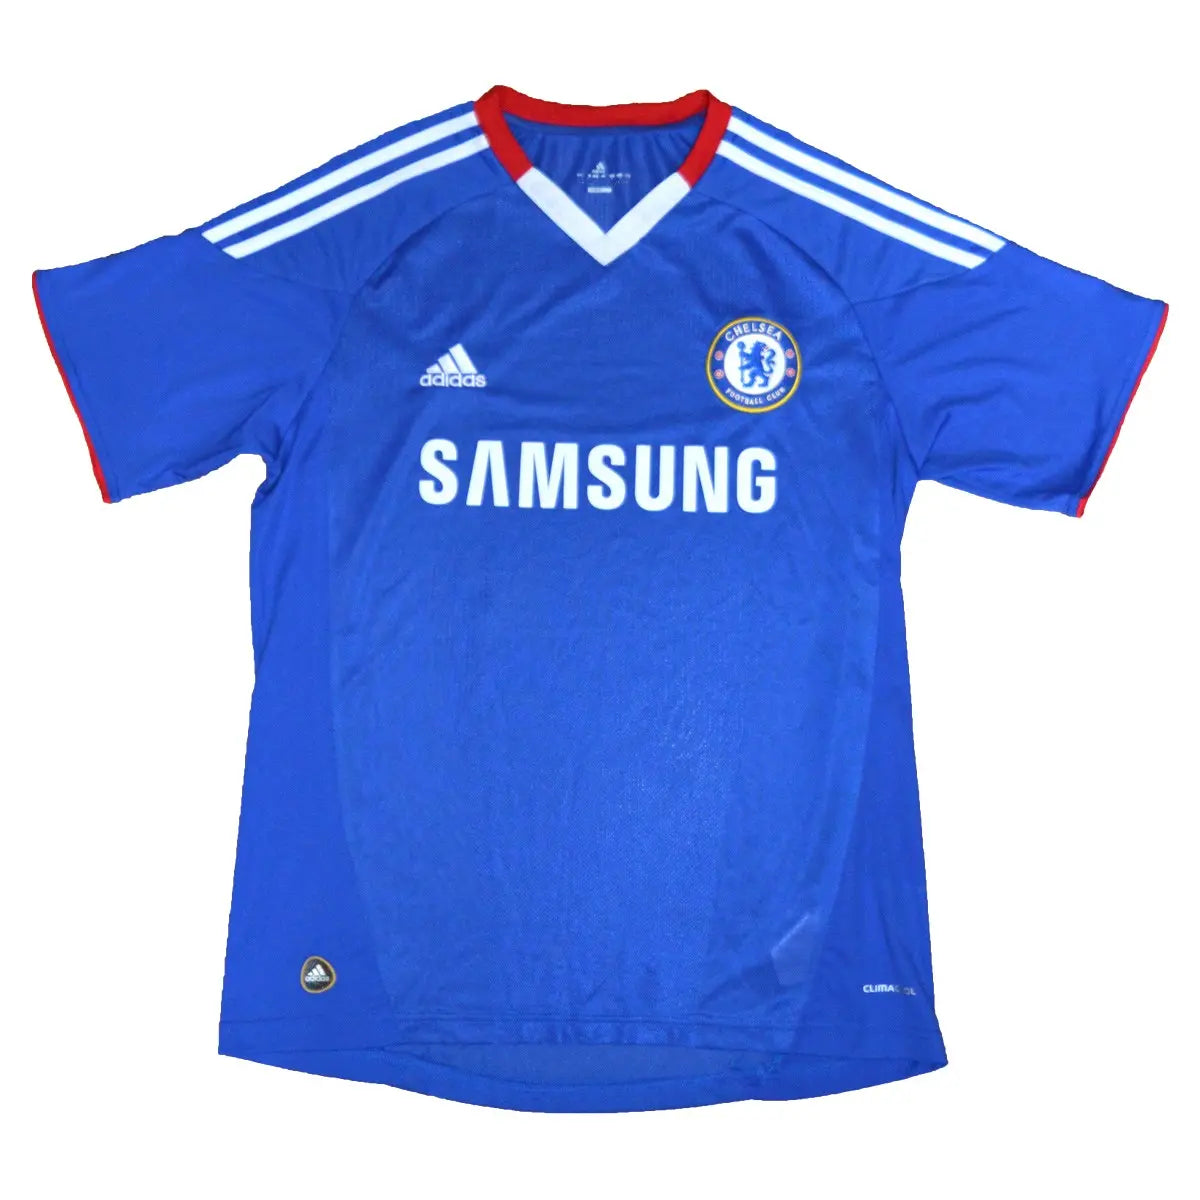 Maillot retro/vintage authentique domicile Chelsea, bleu adidas avec le sponsor samsung. maillot porté lors de la saison 2010-2011